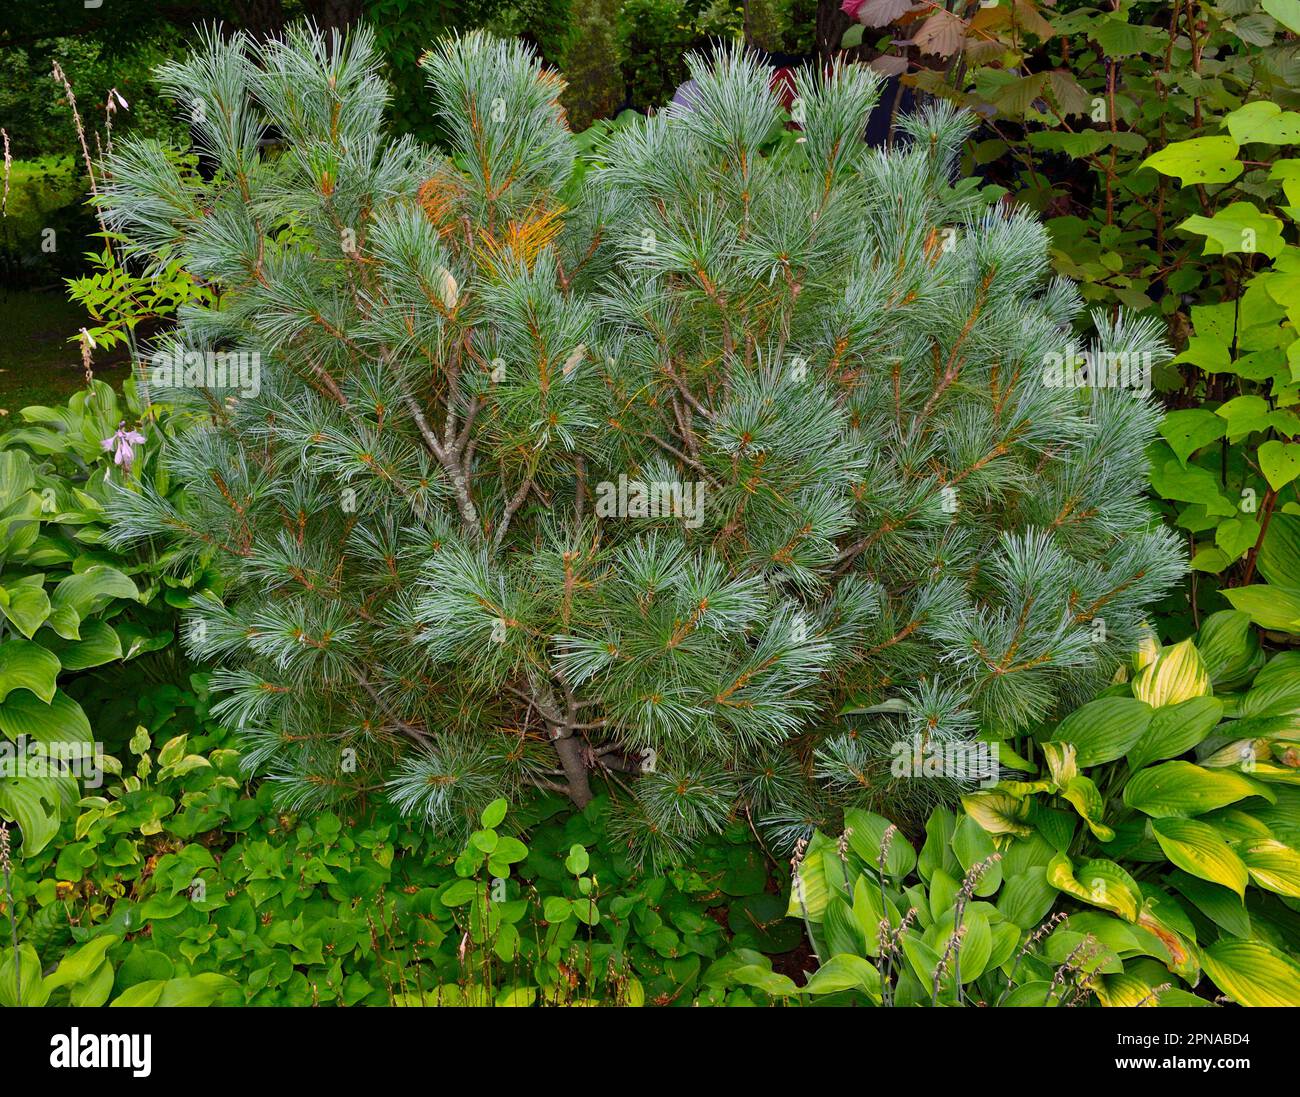 Pino enano o Pinus pumila en jardín - planta de coníferas rastreras decorativas para el diseño del paisaje del jardín. Conífera enana perenne ornamental para pa Foto de stock